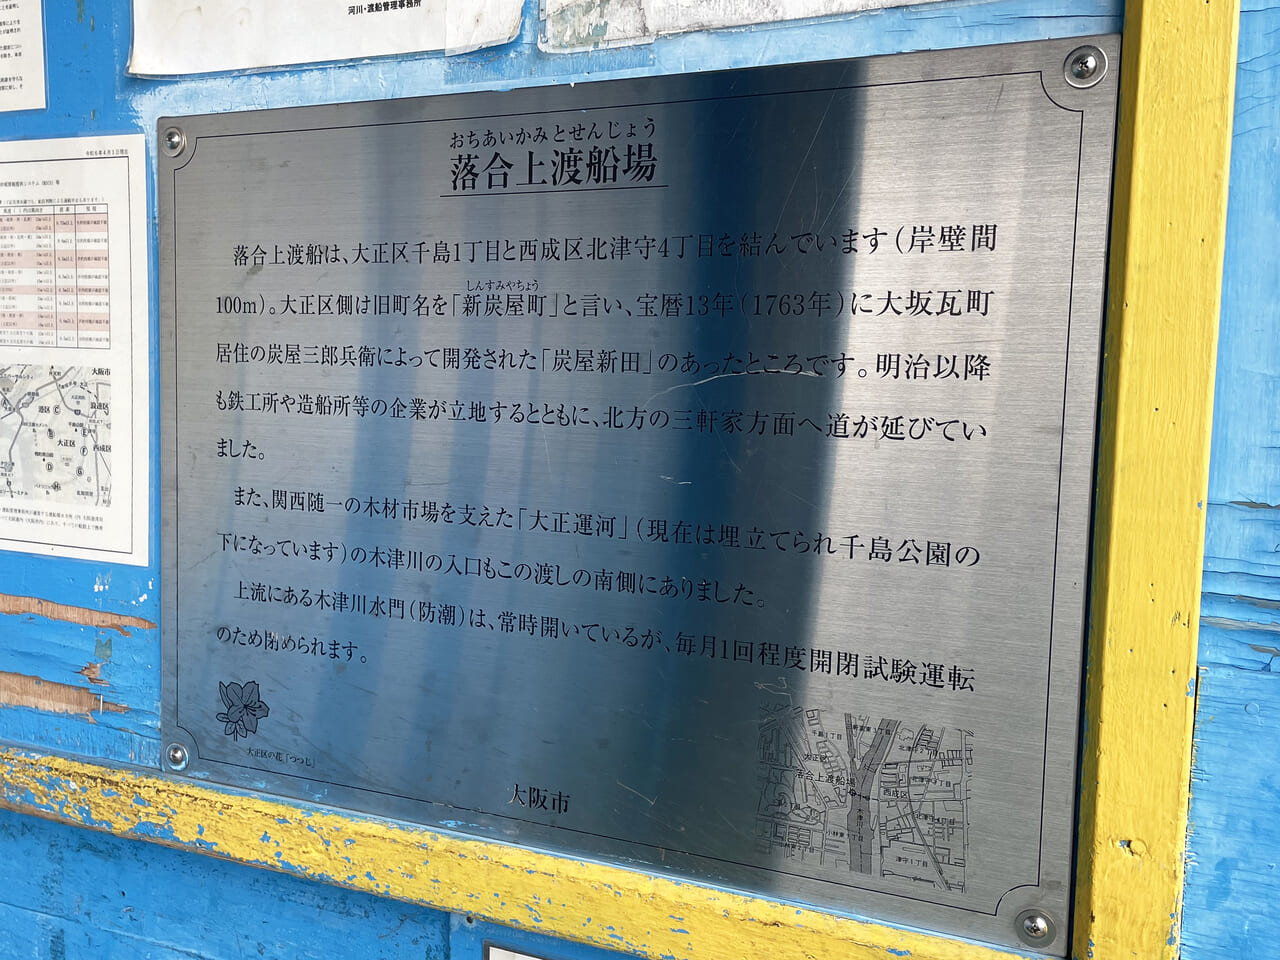 大正区の千島の落合上渡船場の説明